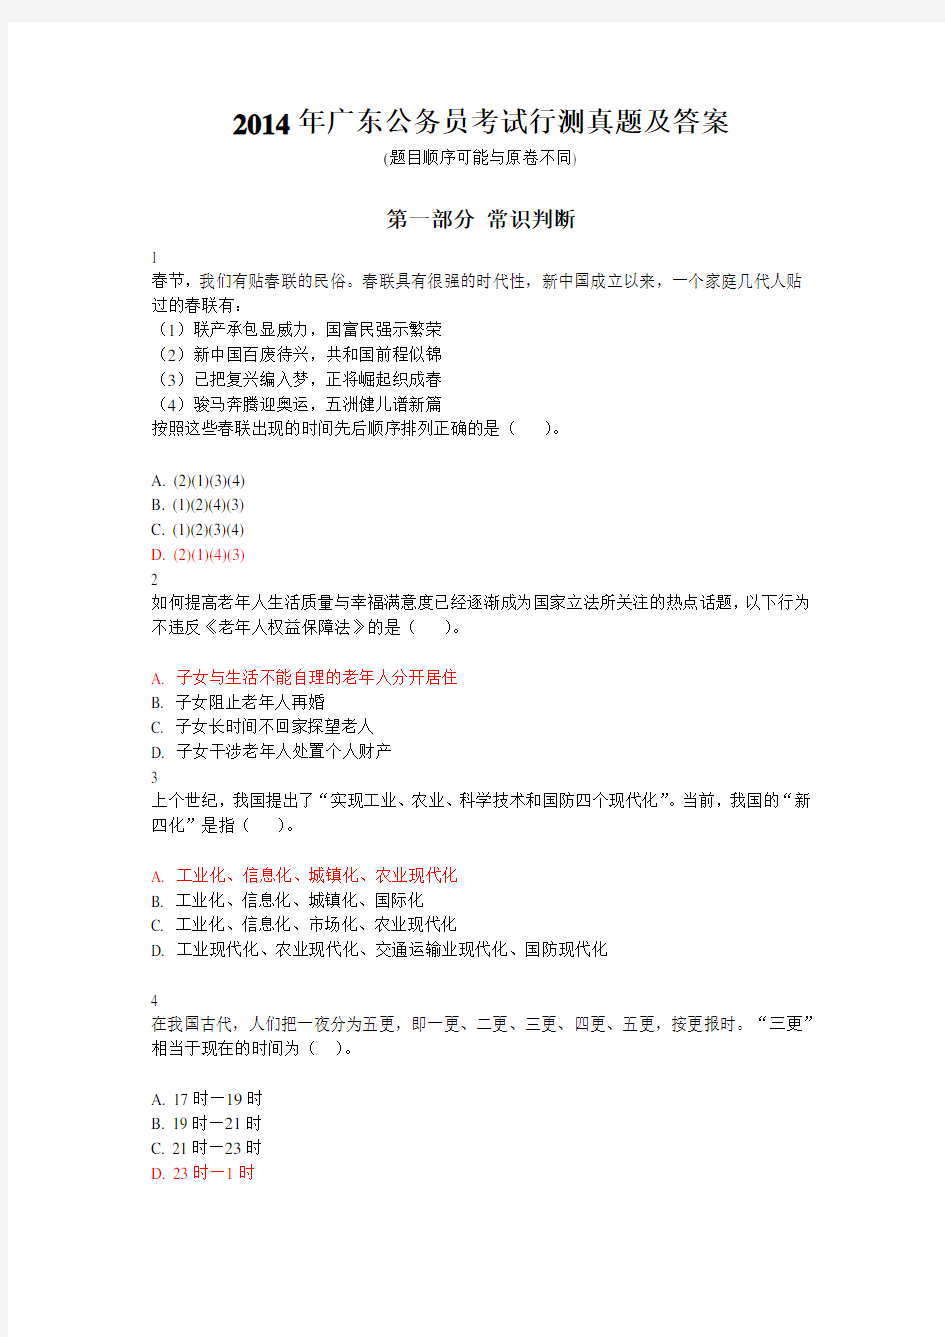 2014年广东省公务员考试行测真题及答案(100题完整版)